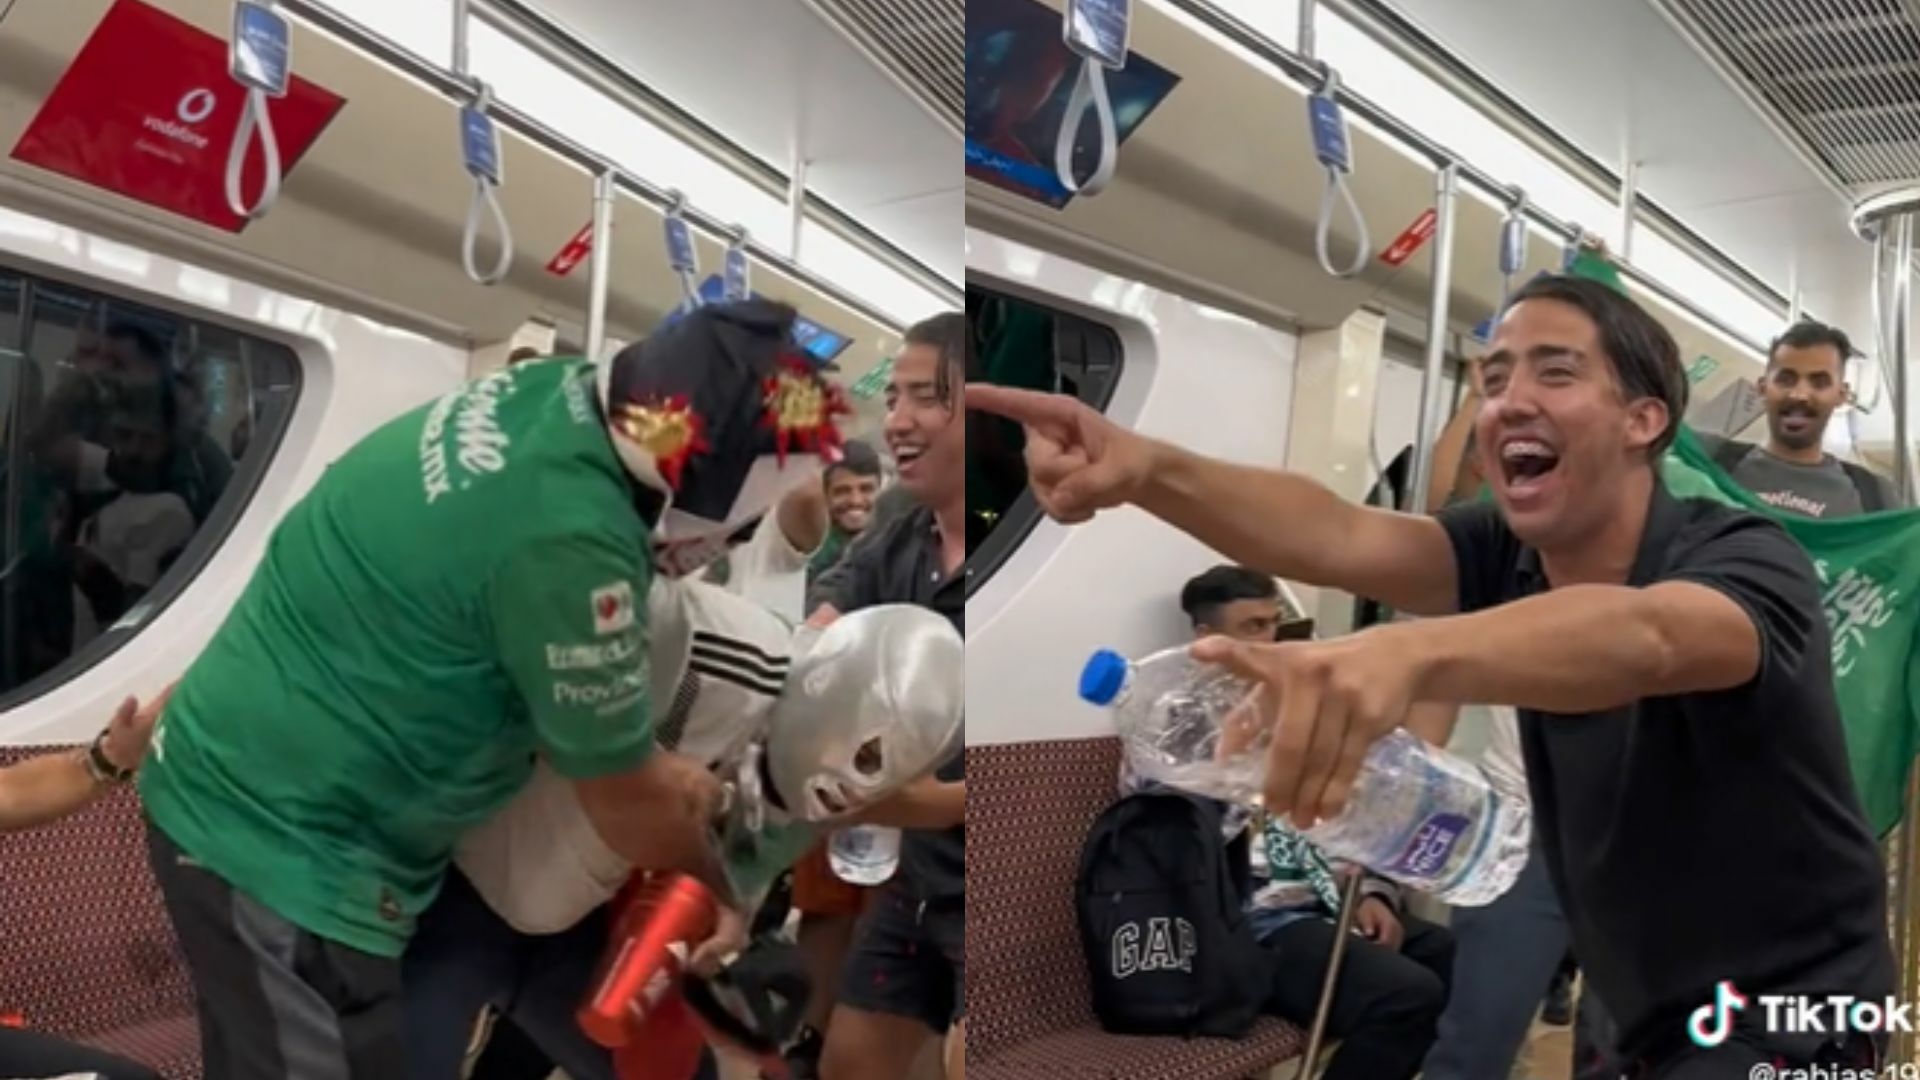 VIRAL: Mexicanos arman función de lucha libre en metro de Qatar